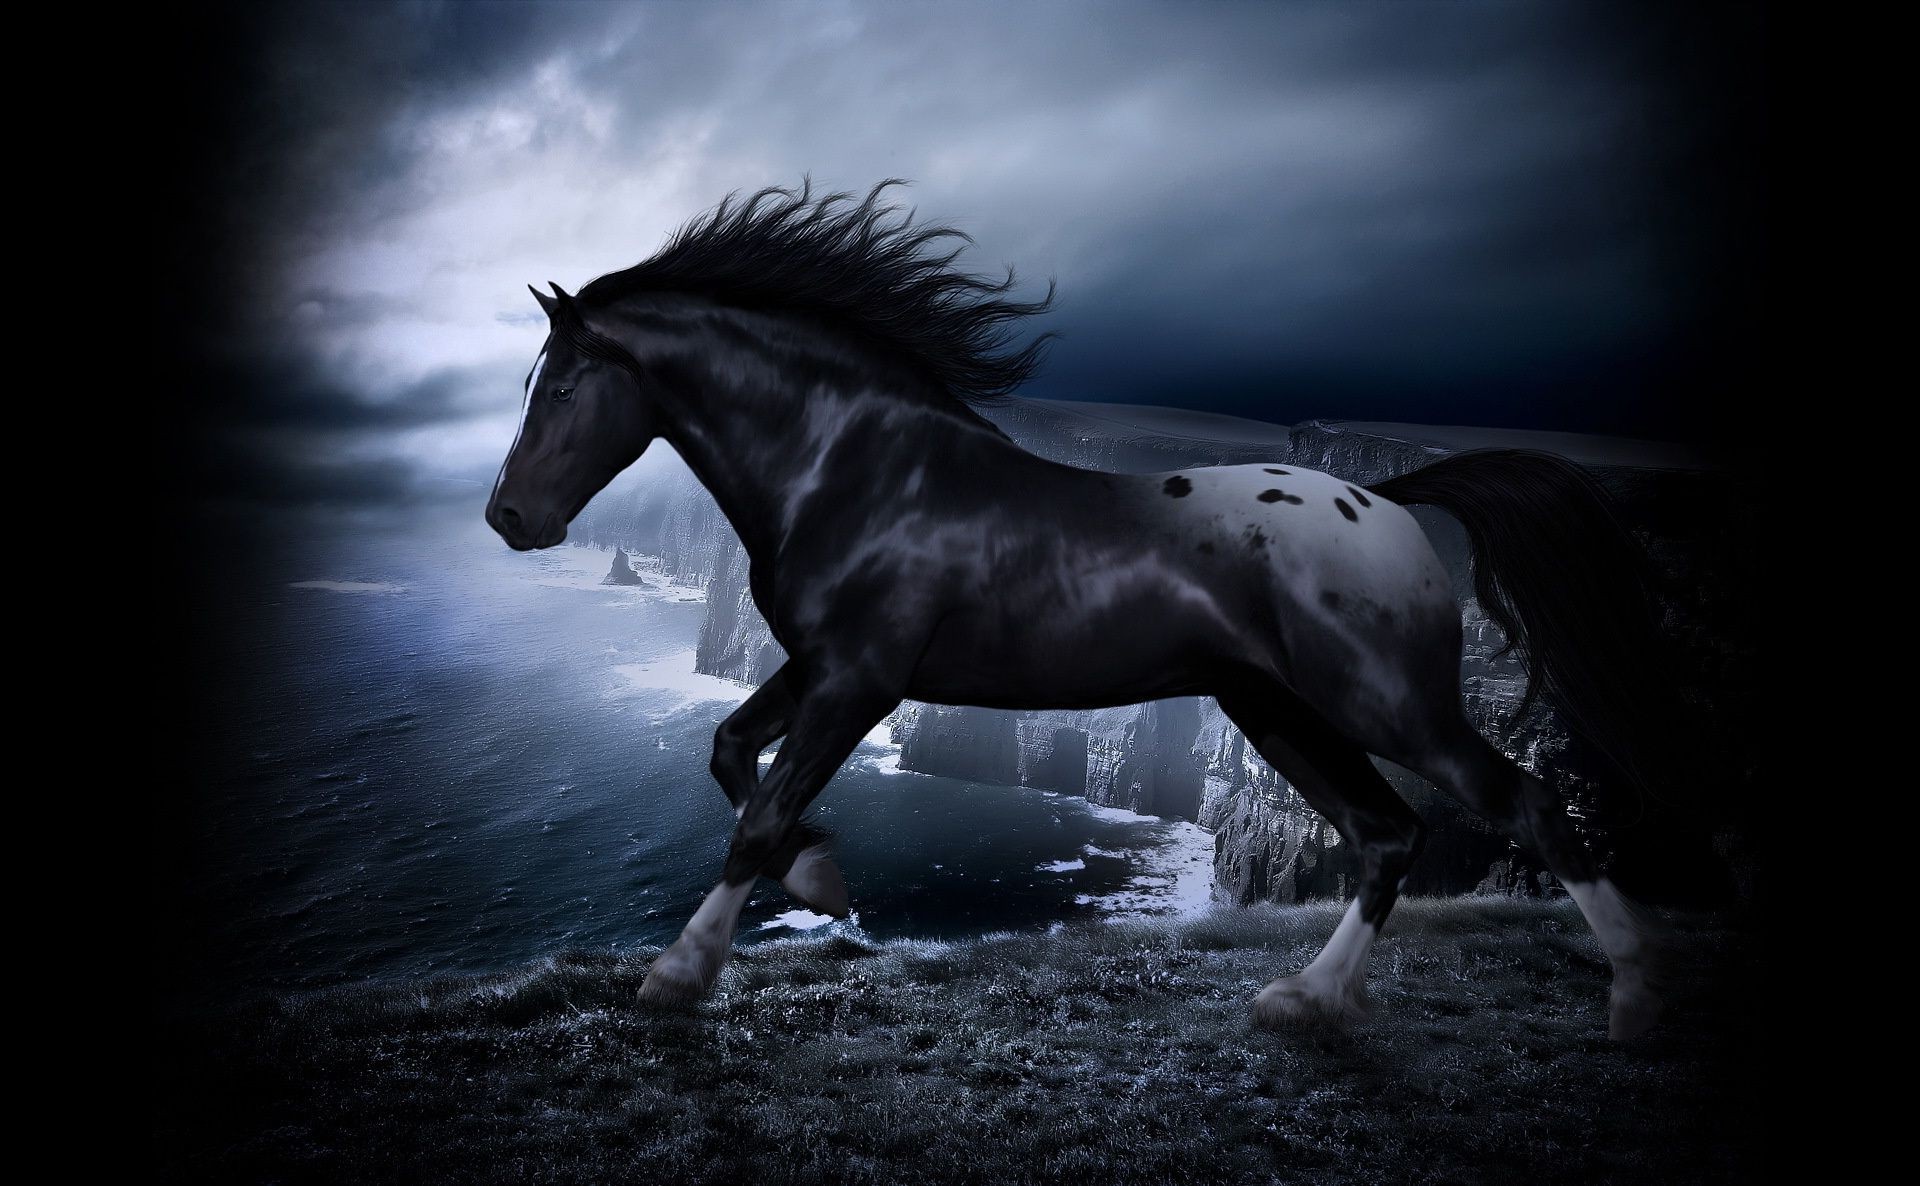 лошади конница маре лошадь монохромный млекопитающее жеребец коневодство мустанг сидит один конный пони гонки животное скаковая лошадь мане